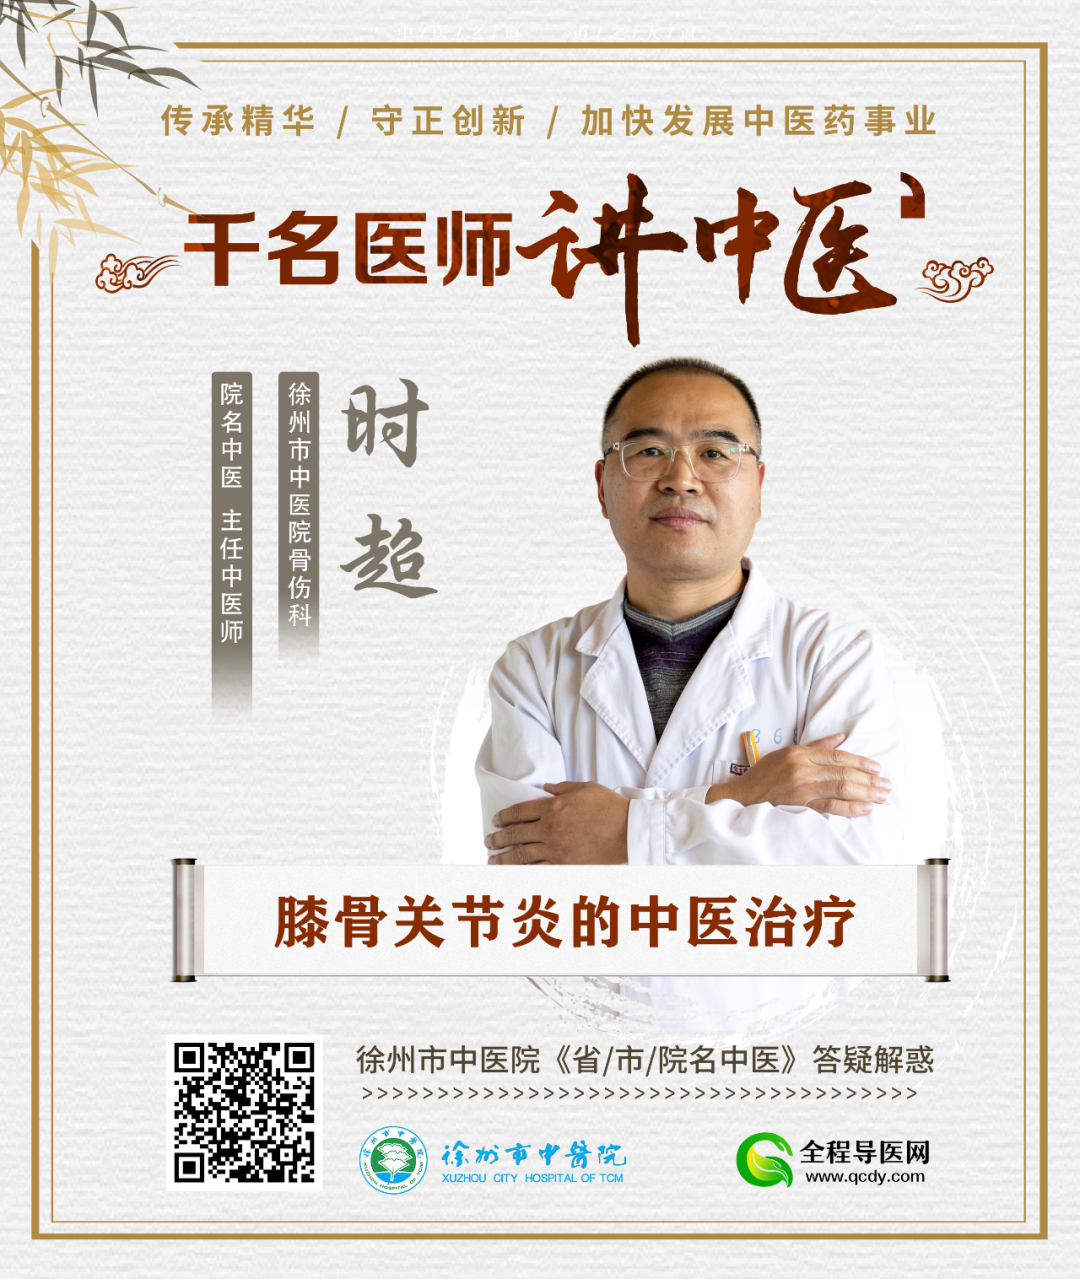 精勤守正 醫者仁心，徐州中醫院這位醫生盡顯擔當